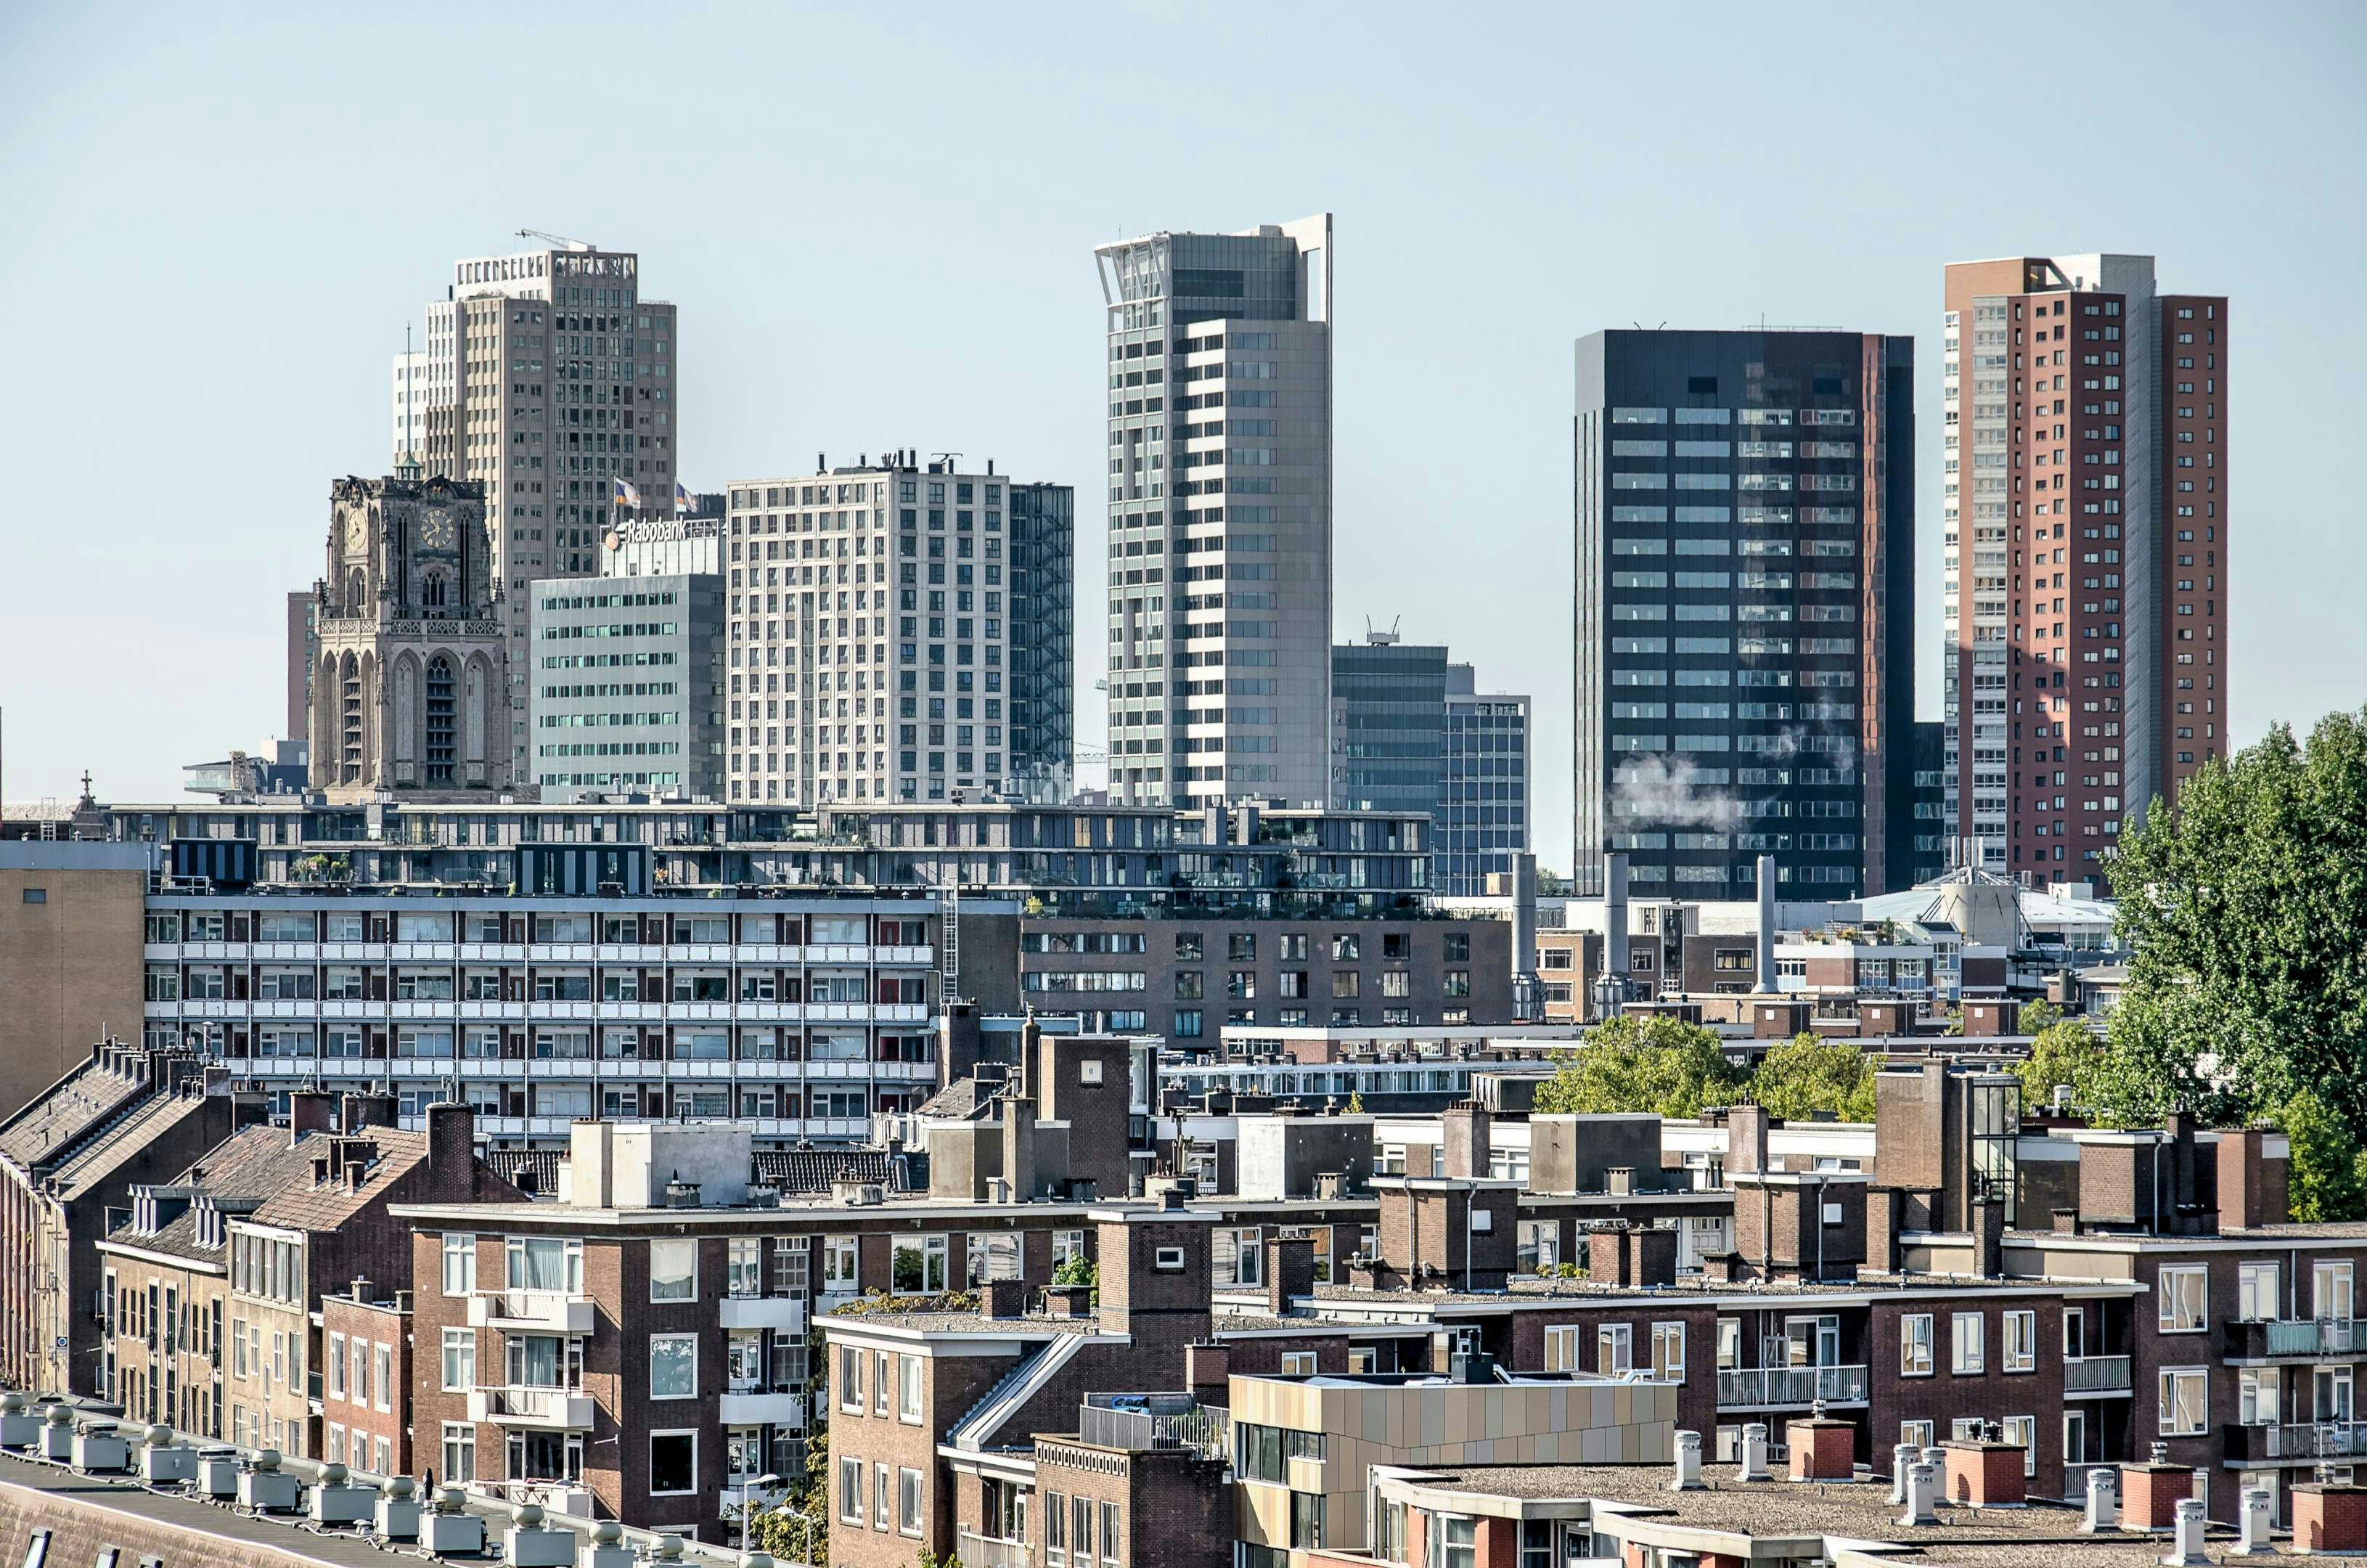 Woningen in Rotterdam Crooswijk. Beeld Shutterstock